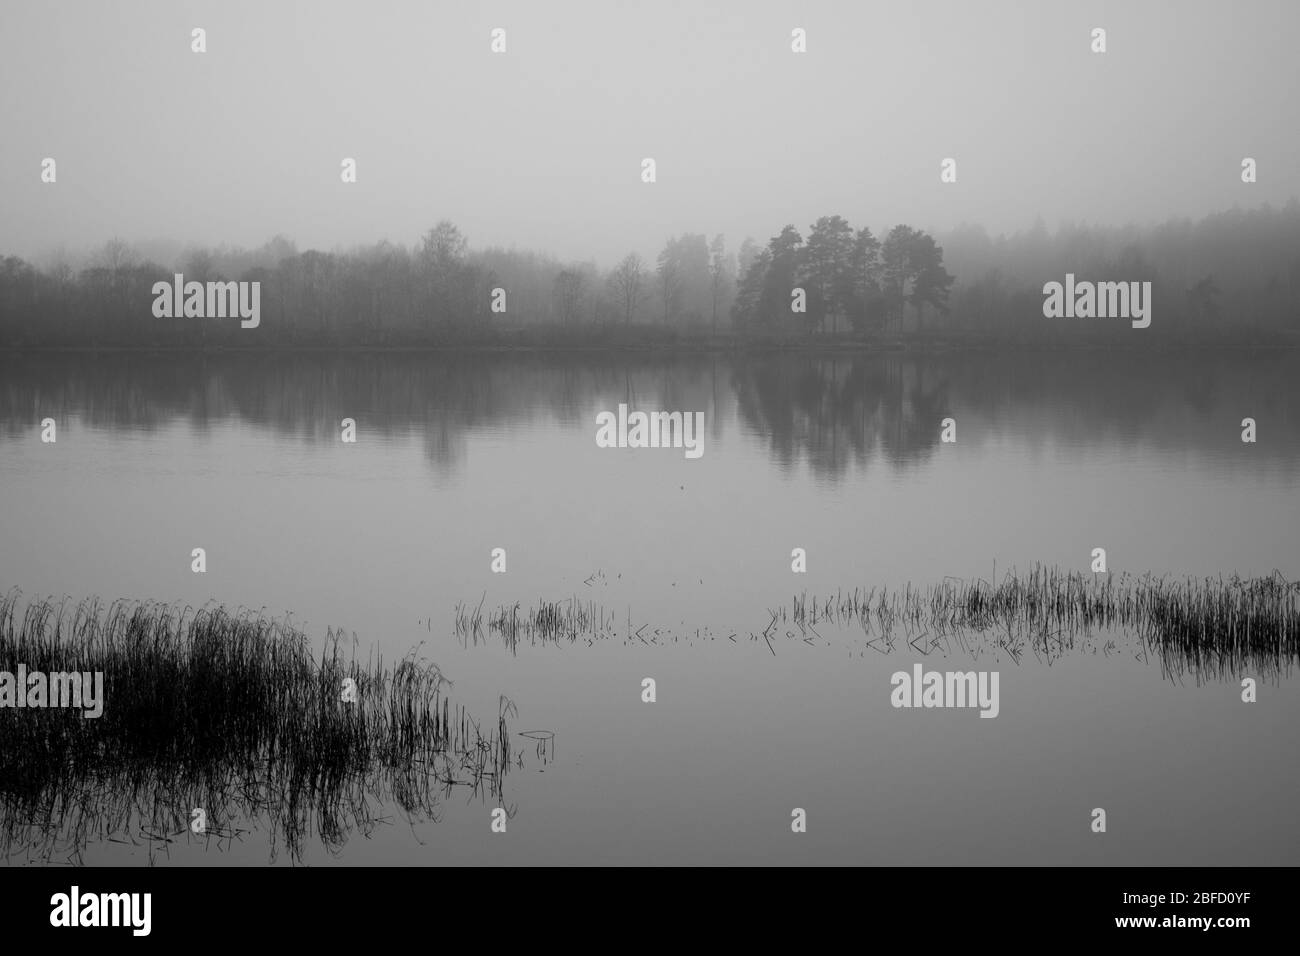 Eine schwarz-weiße Szene an einem Fluss an einem grauen nebligen Tag mit trockenem Schilf im Vordergrund und einem anderen Ufer, das im Nebel verschwindet Stockfoto